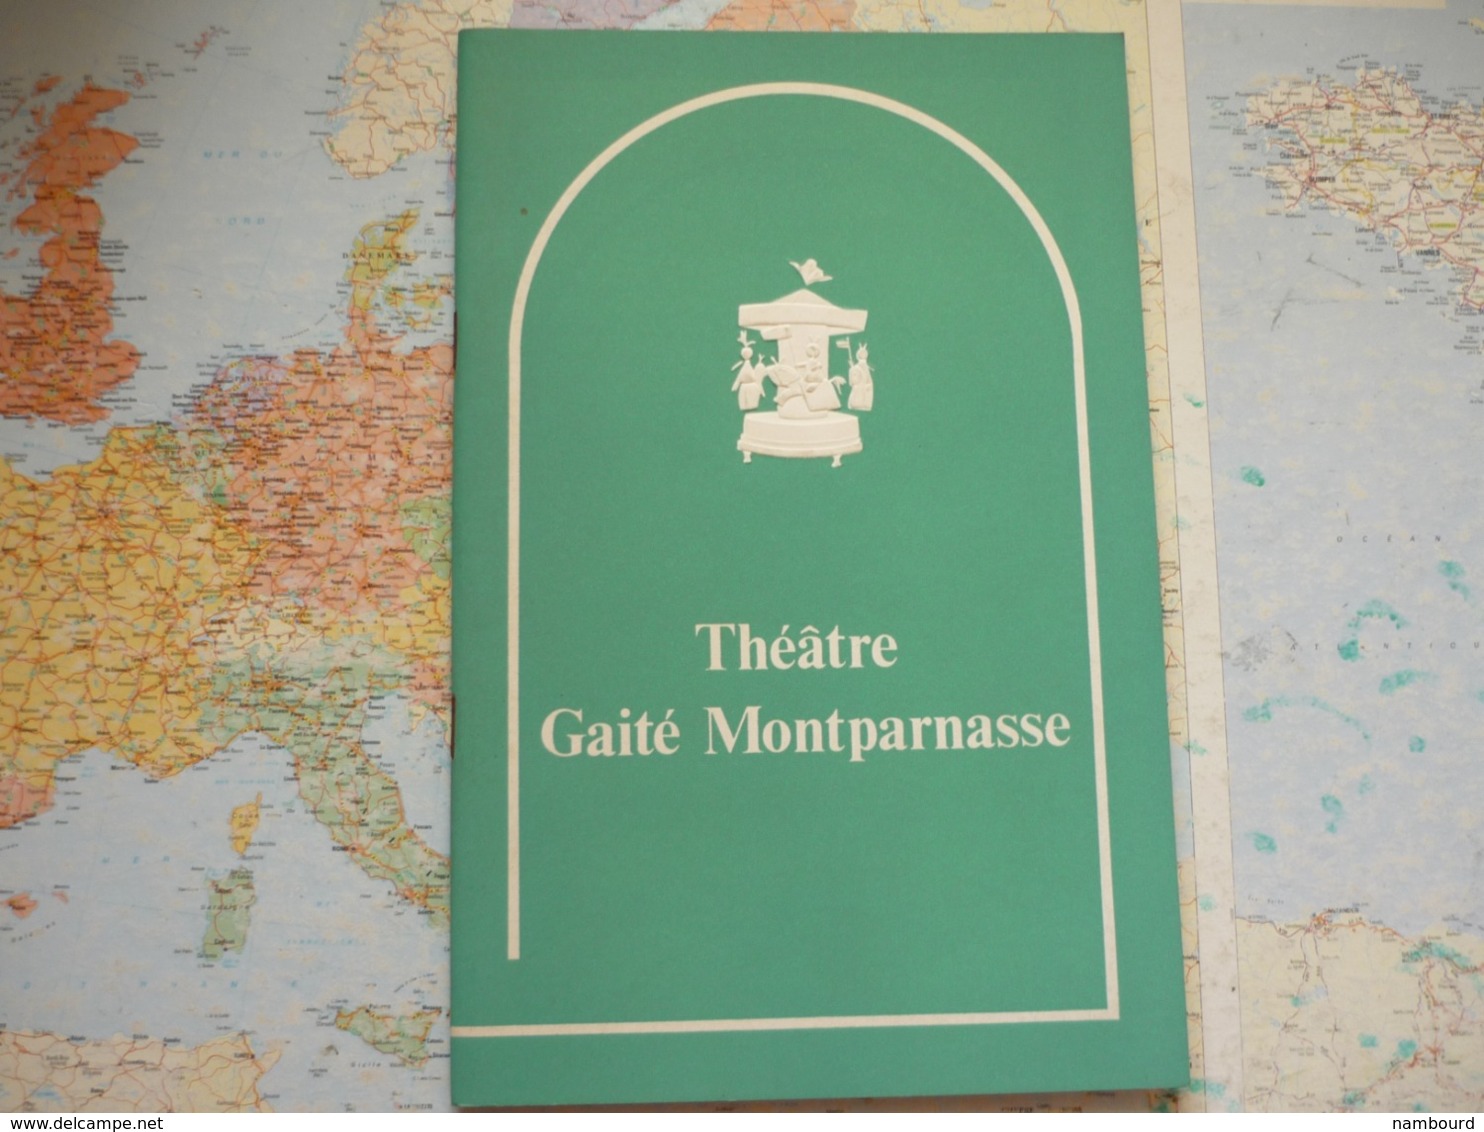 Butley De Simon Gray Théâtre Gaité Montparnasse 10 Mars 1974 - Programas